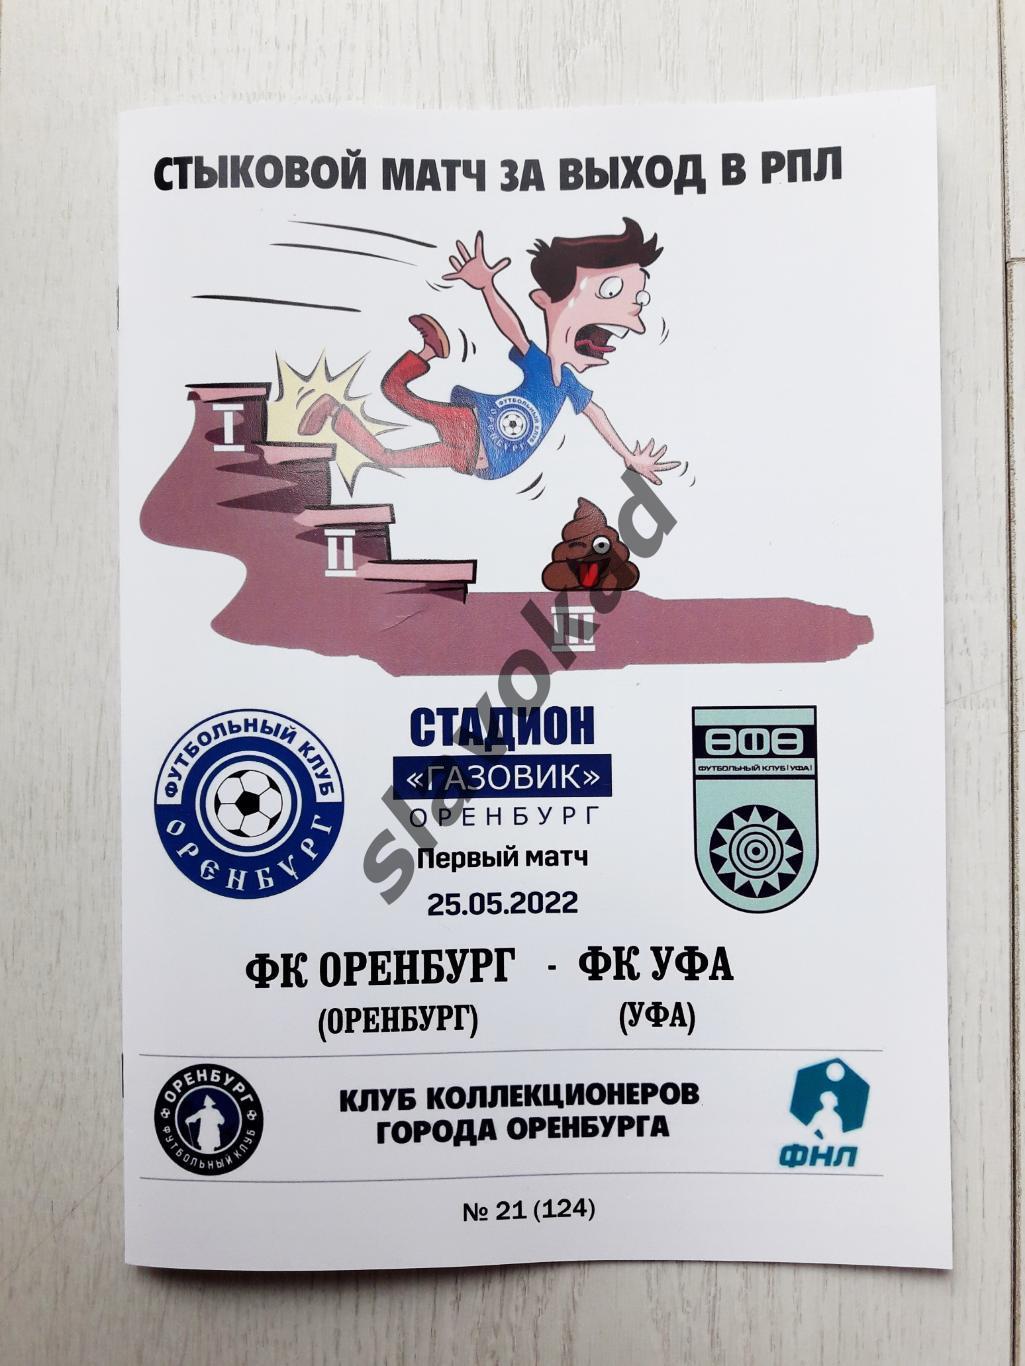 ФК Оренбург - ФК Уфа 25.05.2022 (стыковой матч) - авторская программа № 21 (124)